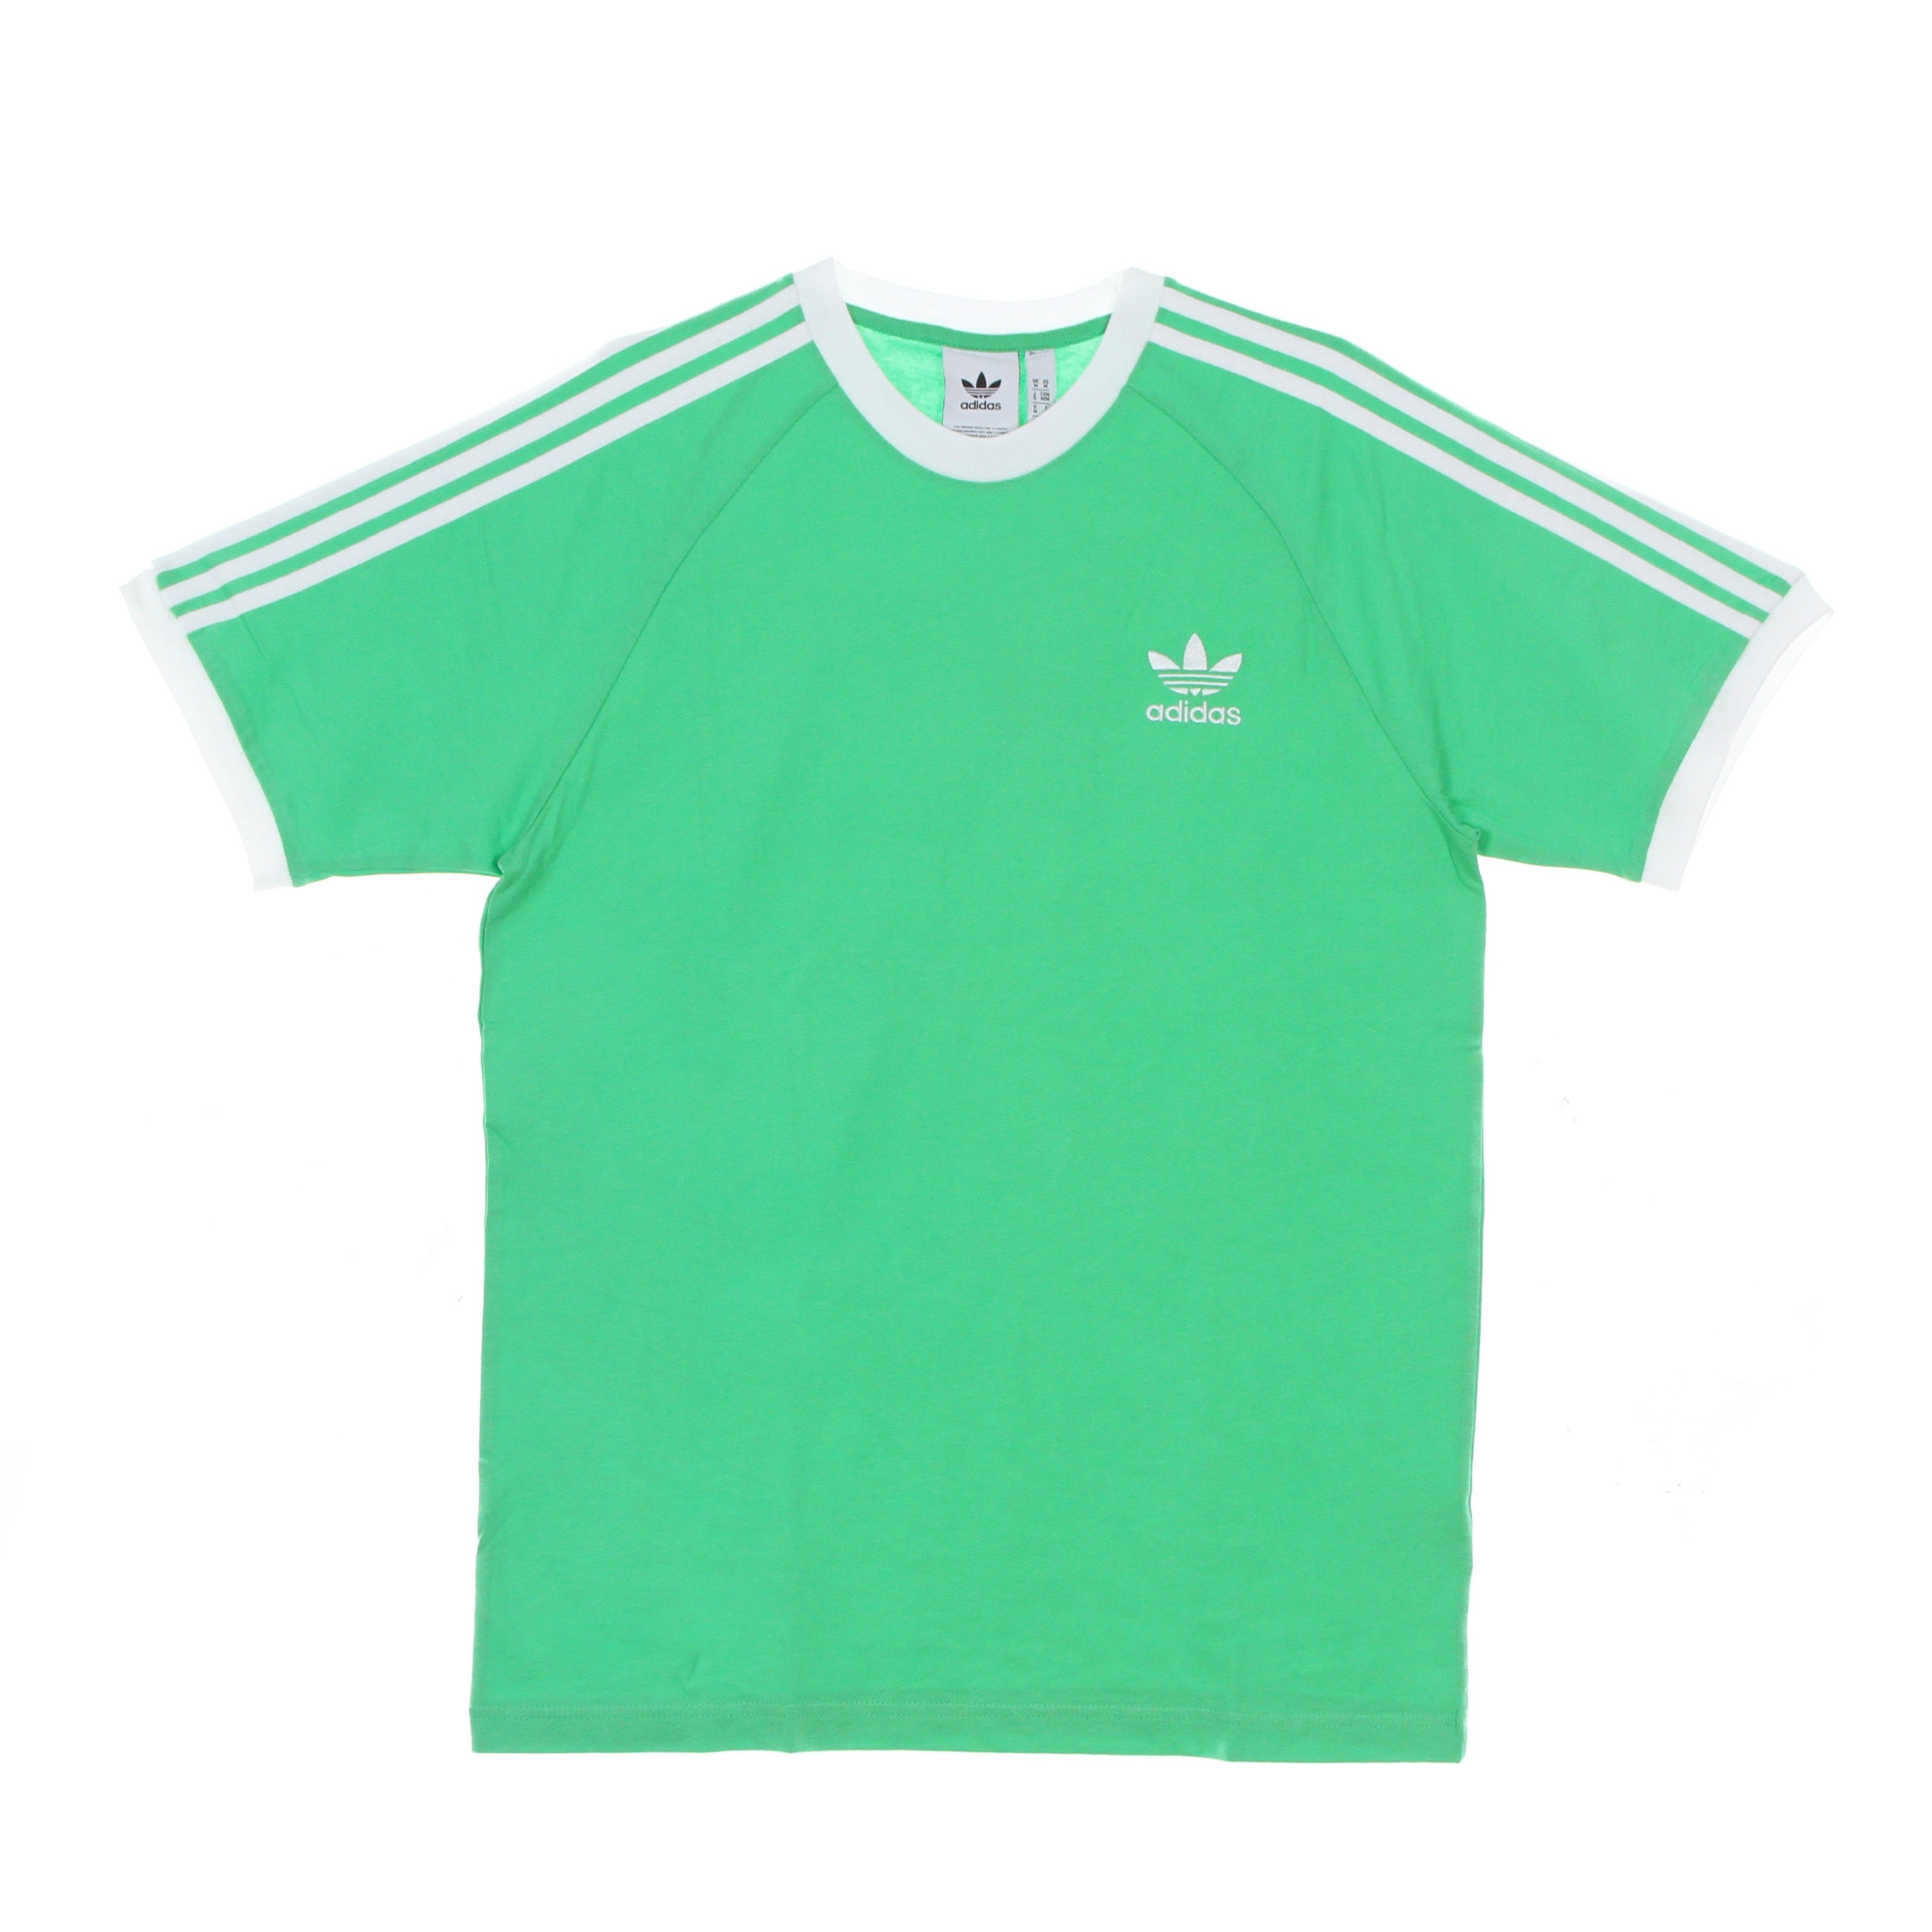 Adidas, Maglietta Uomo 3 Stripes Classic Adicolor Tee, Semi Screaming Green